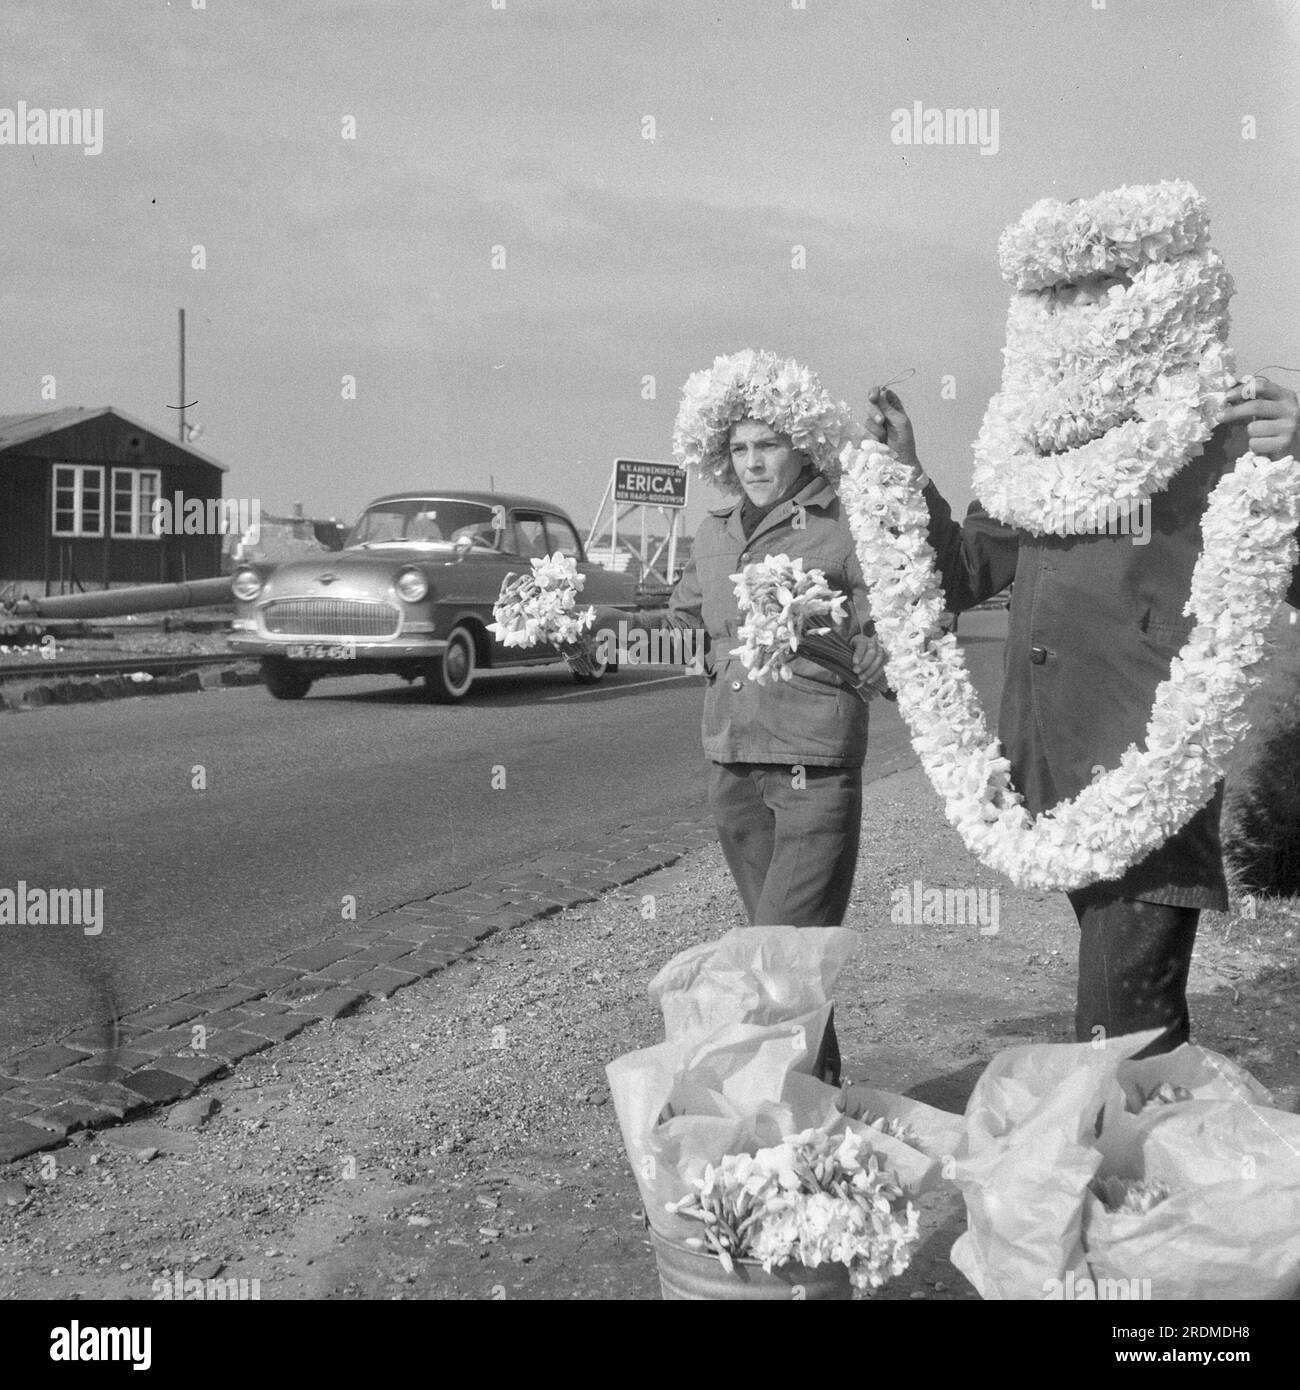 Jack de Nijs - Vendeur routier de guirlandes florales dans la région bulbe de Hollande - 1961 Banque D'Images